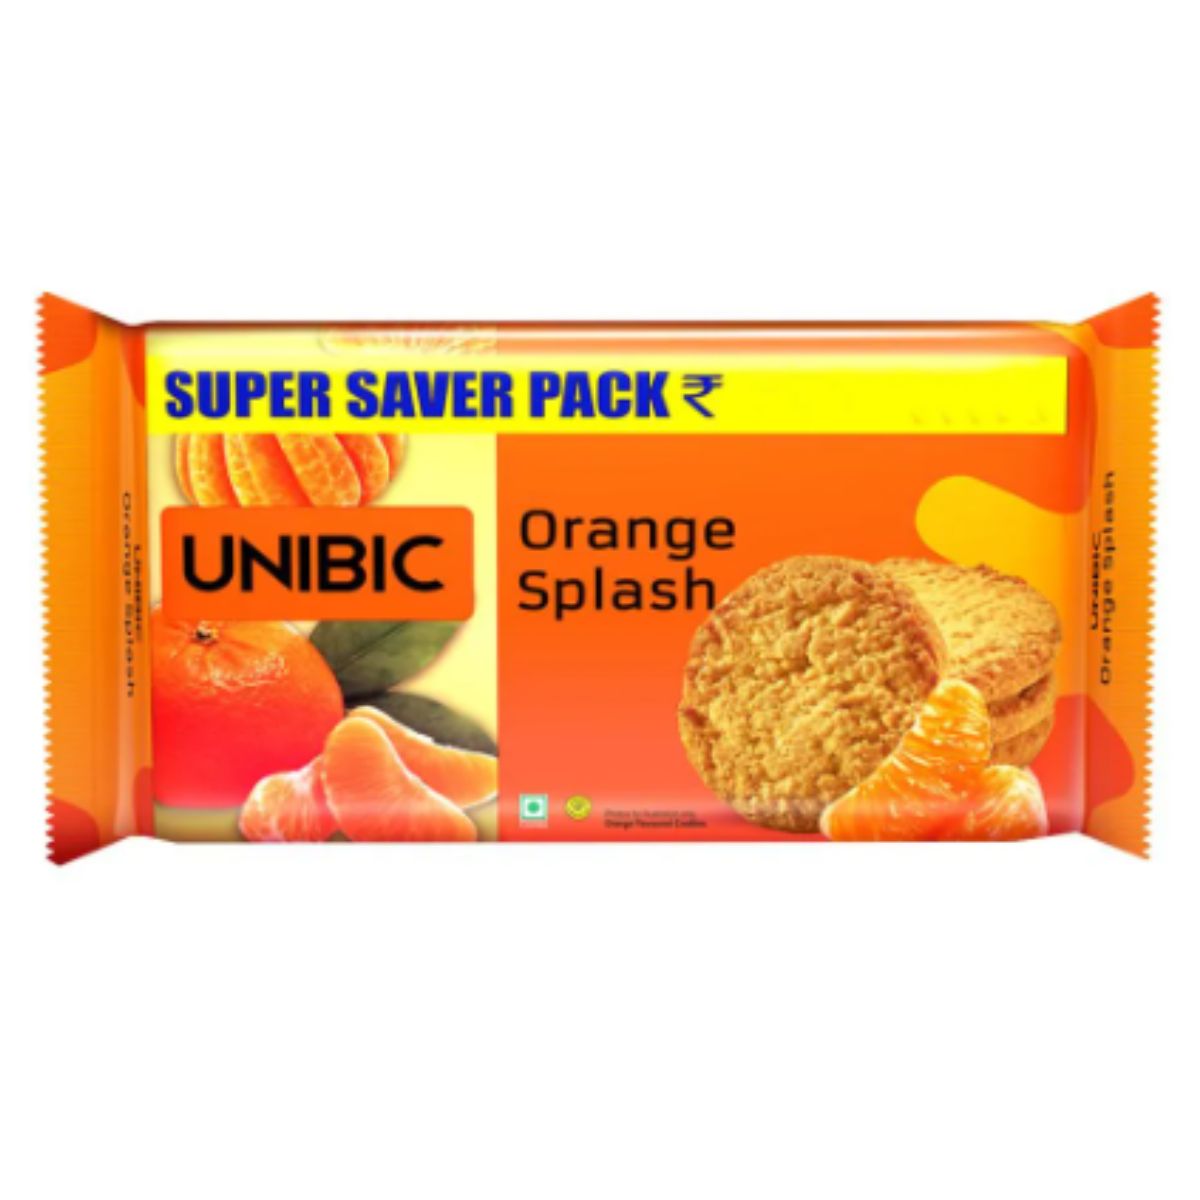 Unibic - Orange Splash Cookies - Super Saver Pack - 500g